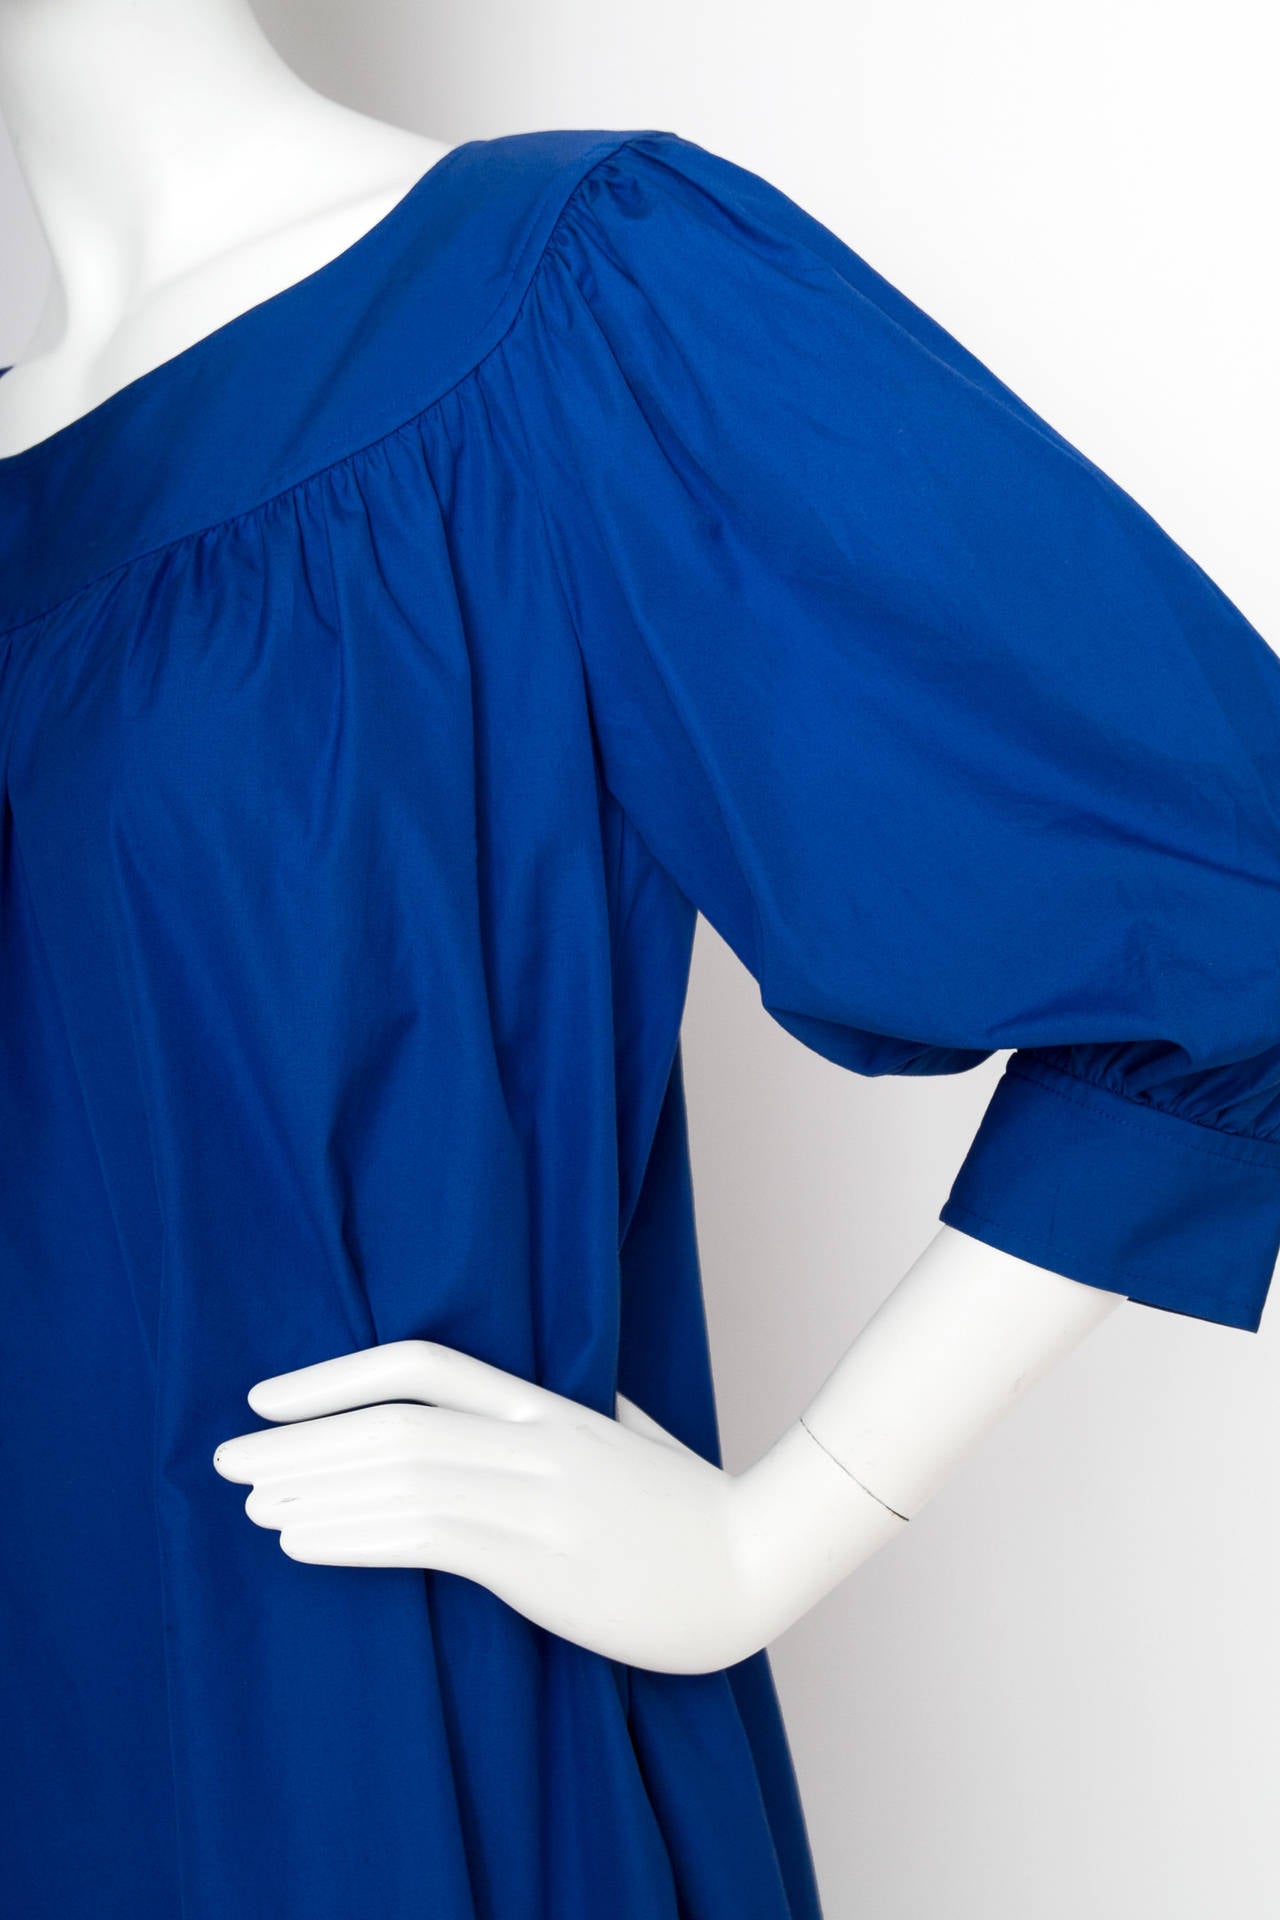 1980s Yves Saint Laurent Blue Tent Dress For Sale 2